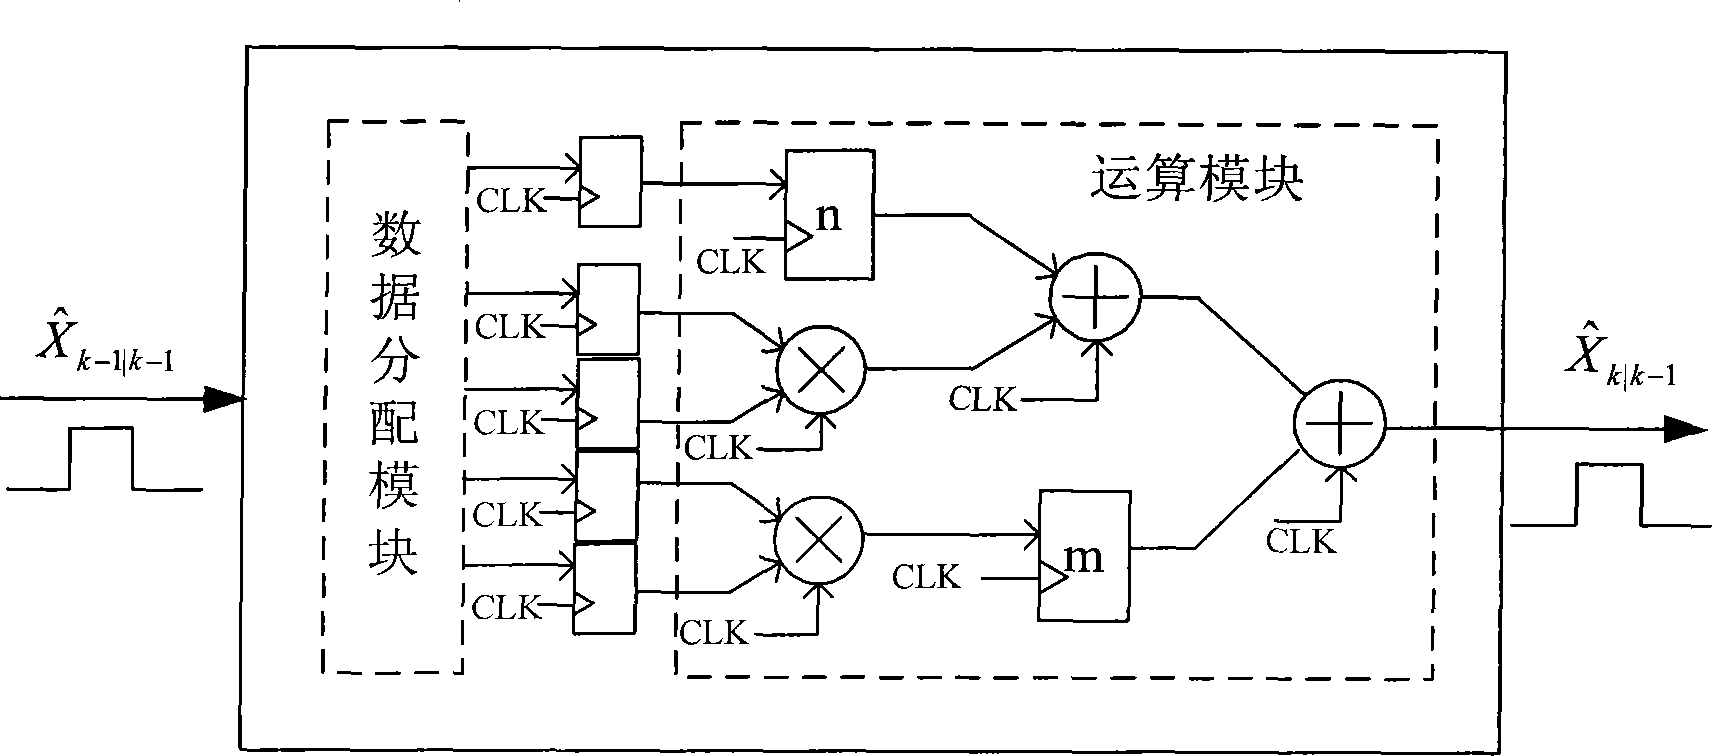 Method for designing DCMFK (Debiased Converted Measurement Kalman filter) based on FPGA (Field Programmable Gate Array)